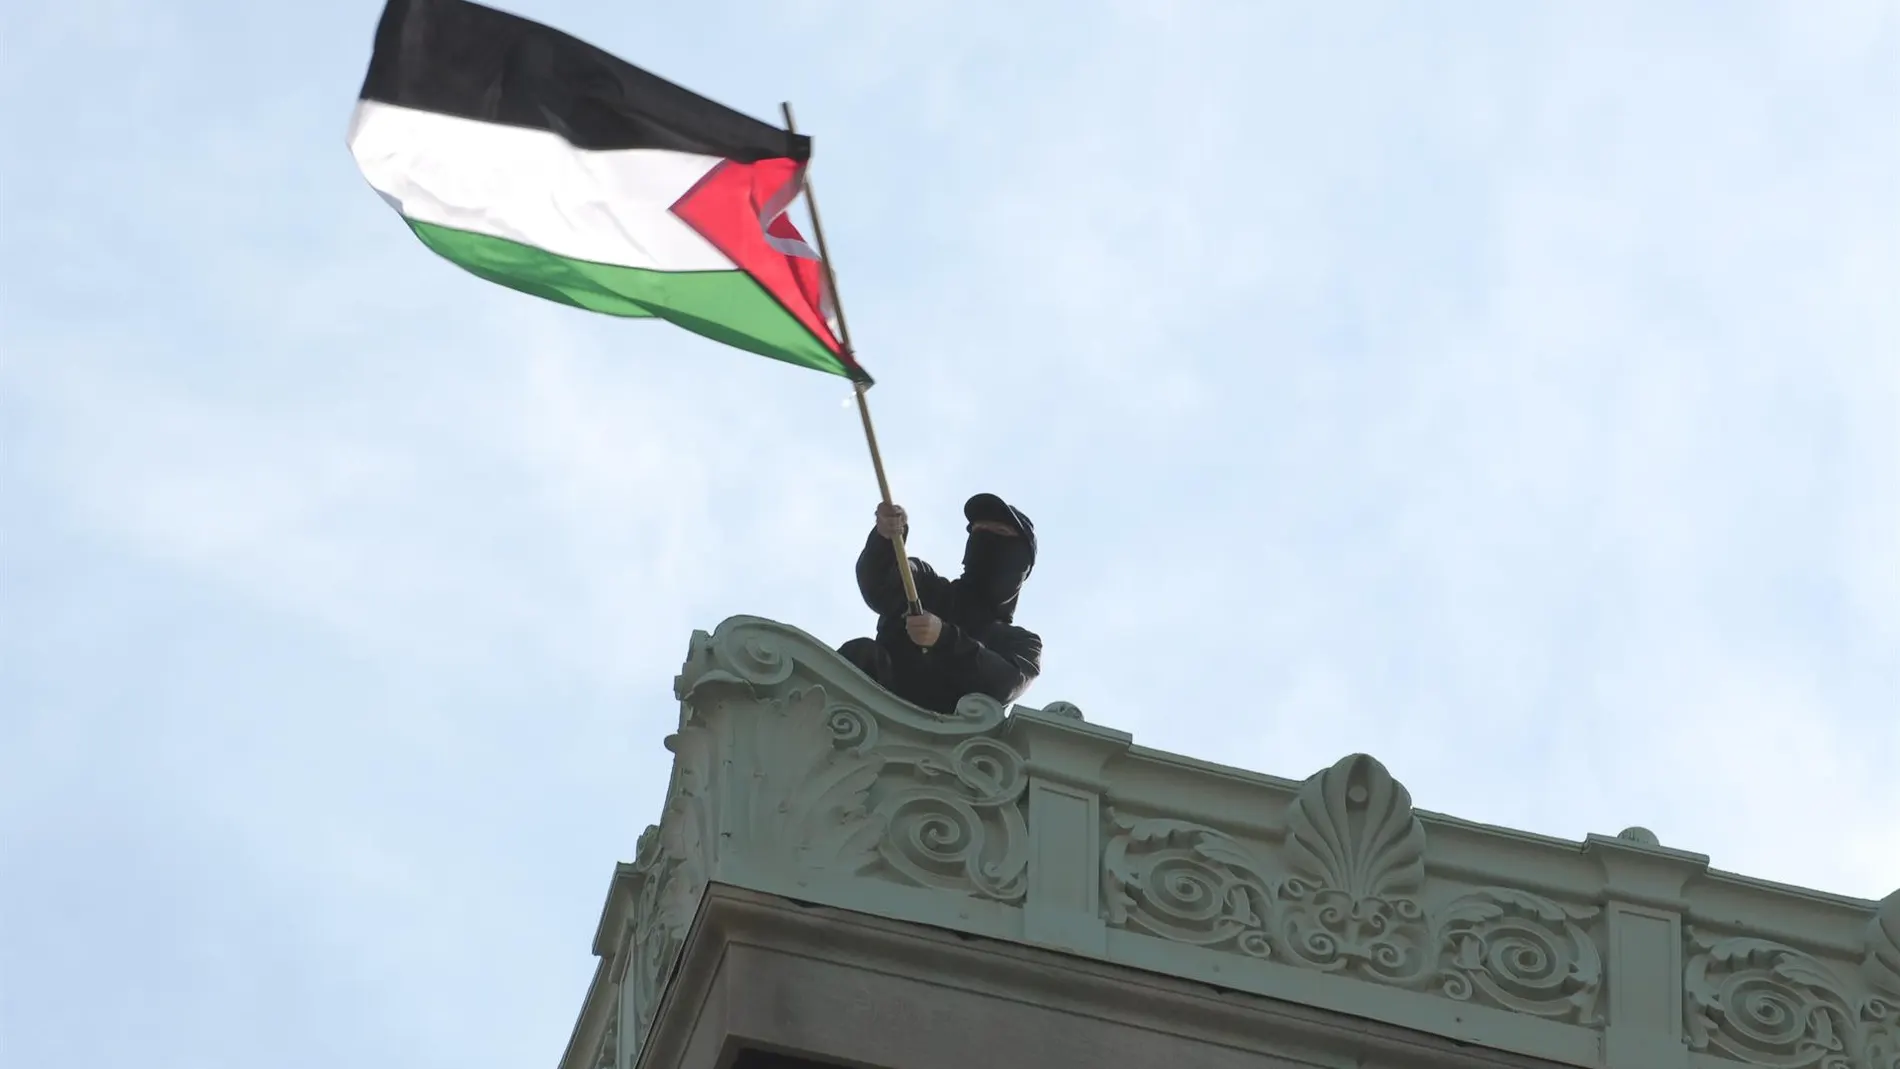 O.Próximo.-La televisión pública irlandesa dice que España y otros países de la UE reconocerán a Palestina el 21 de mayo